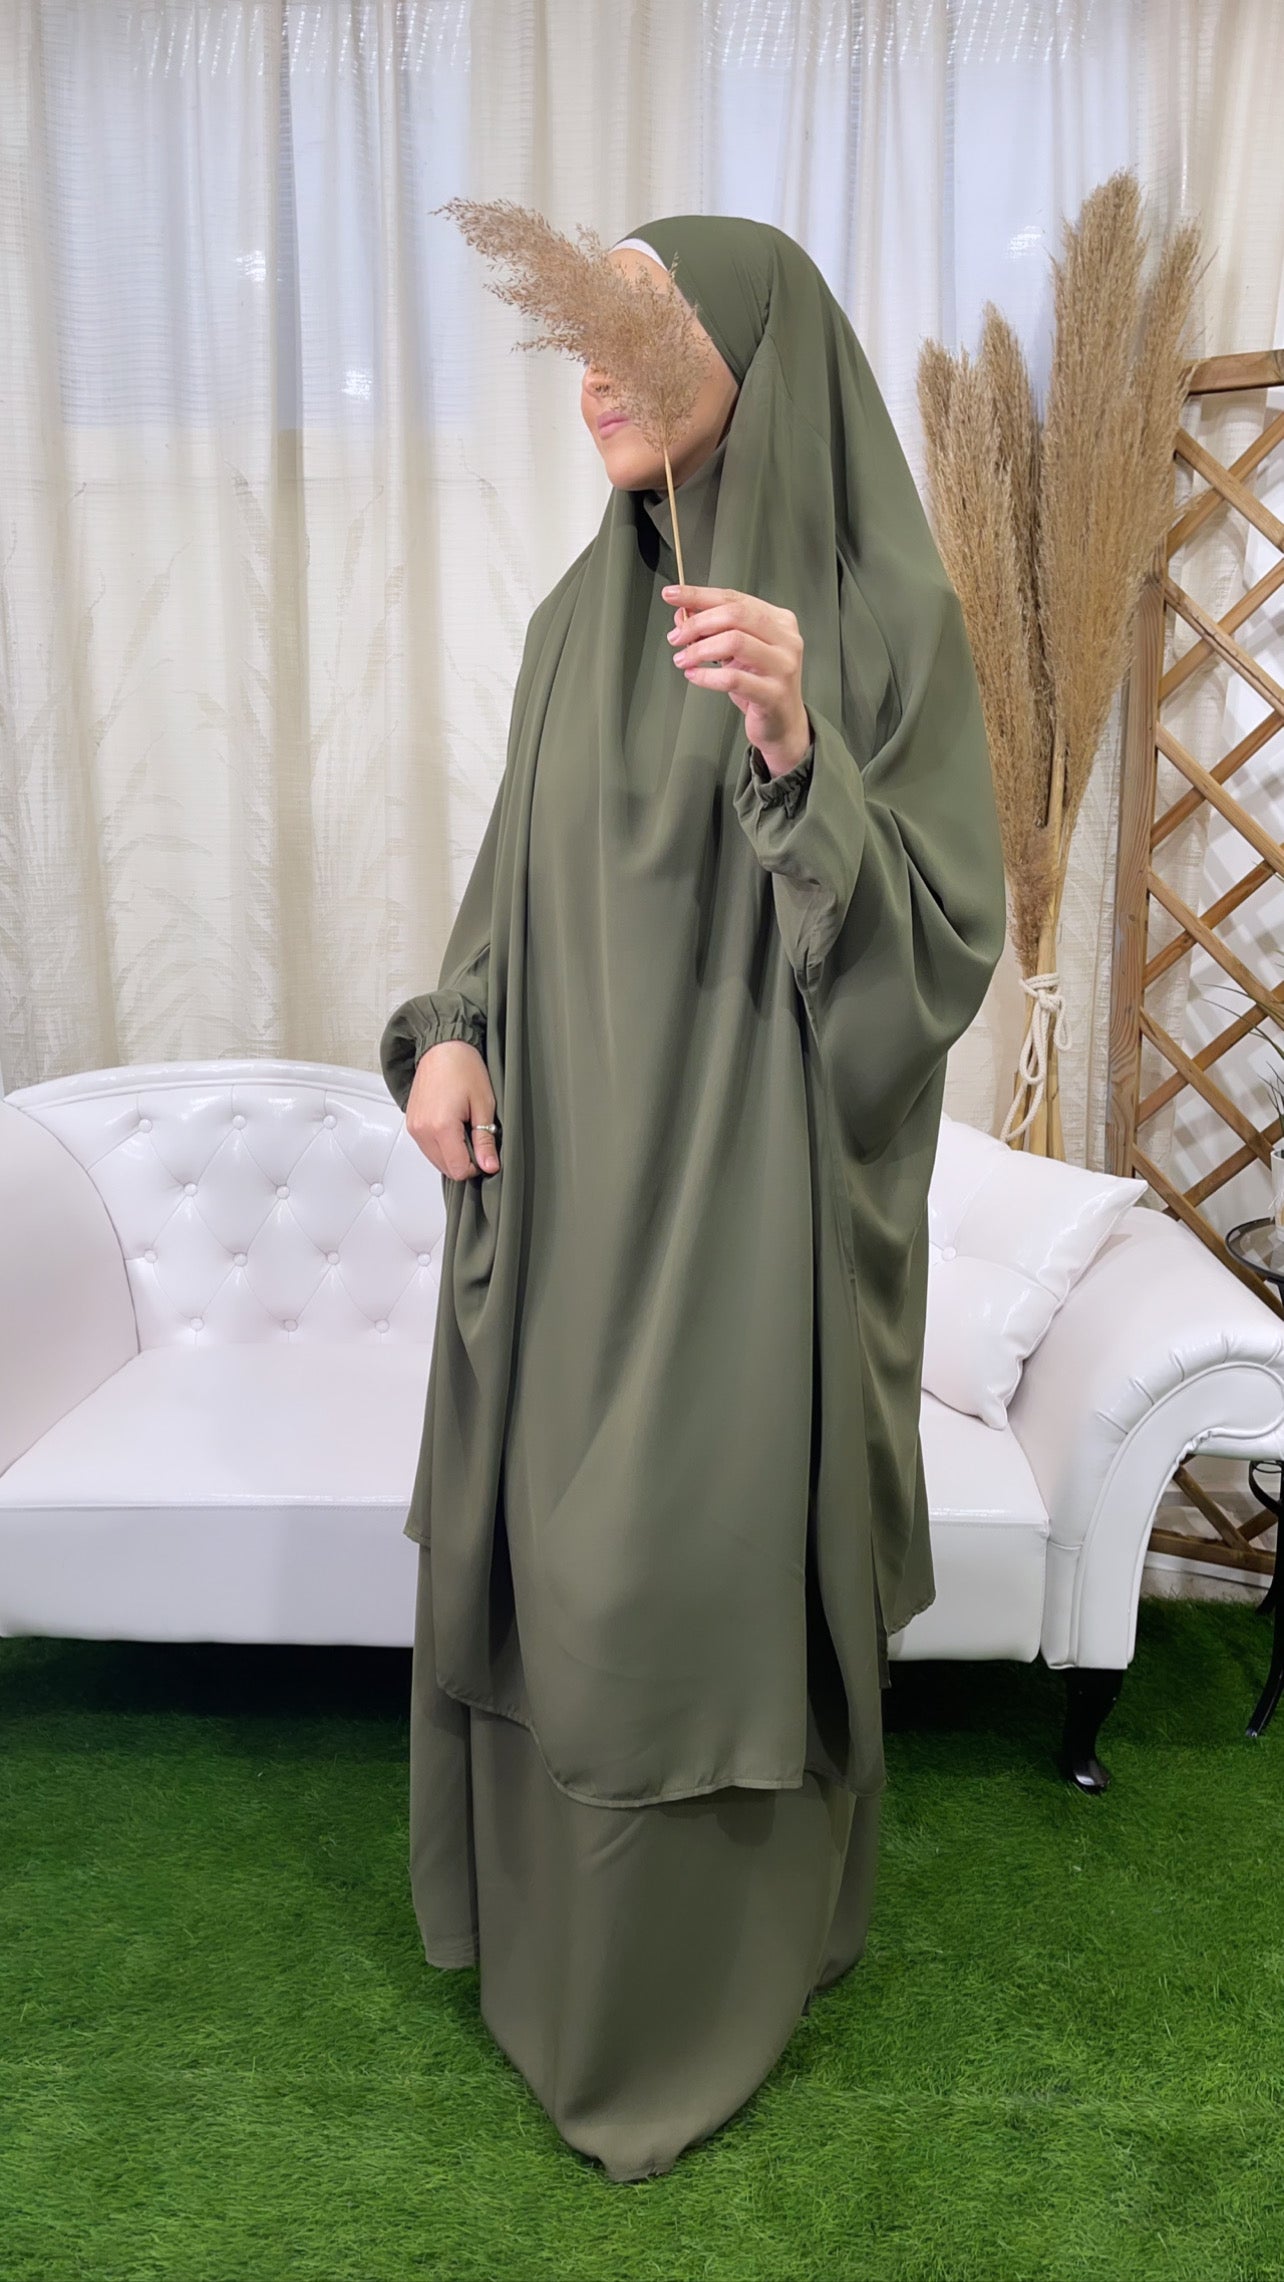 Abito preghiera, gonna, donna islamica, cuffia bianche, sorriso, vestito lungo, velo khimar, copricapo, jilbab , verde militare.Hijab Paradise